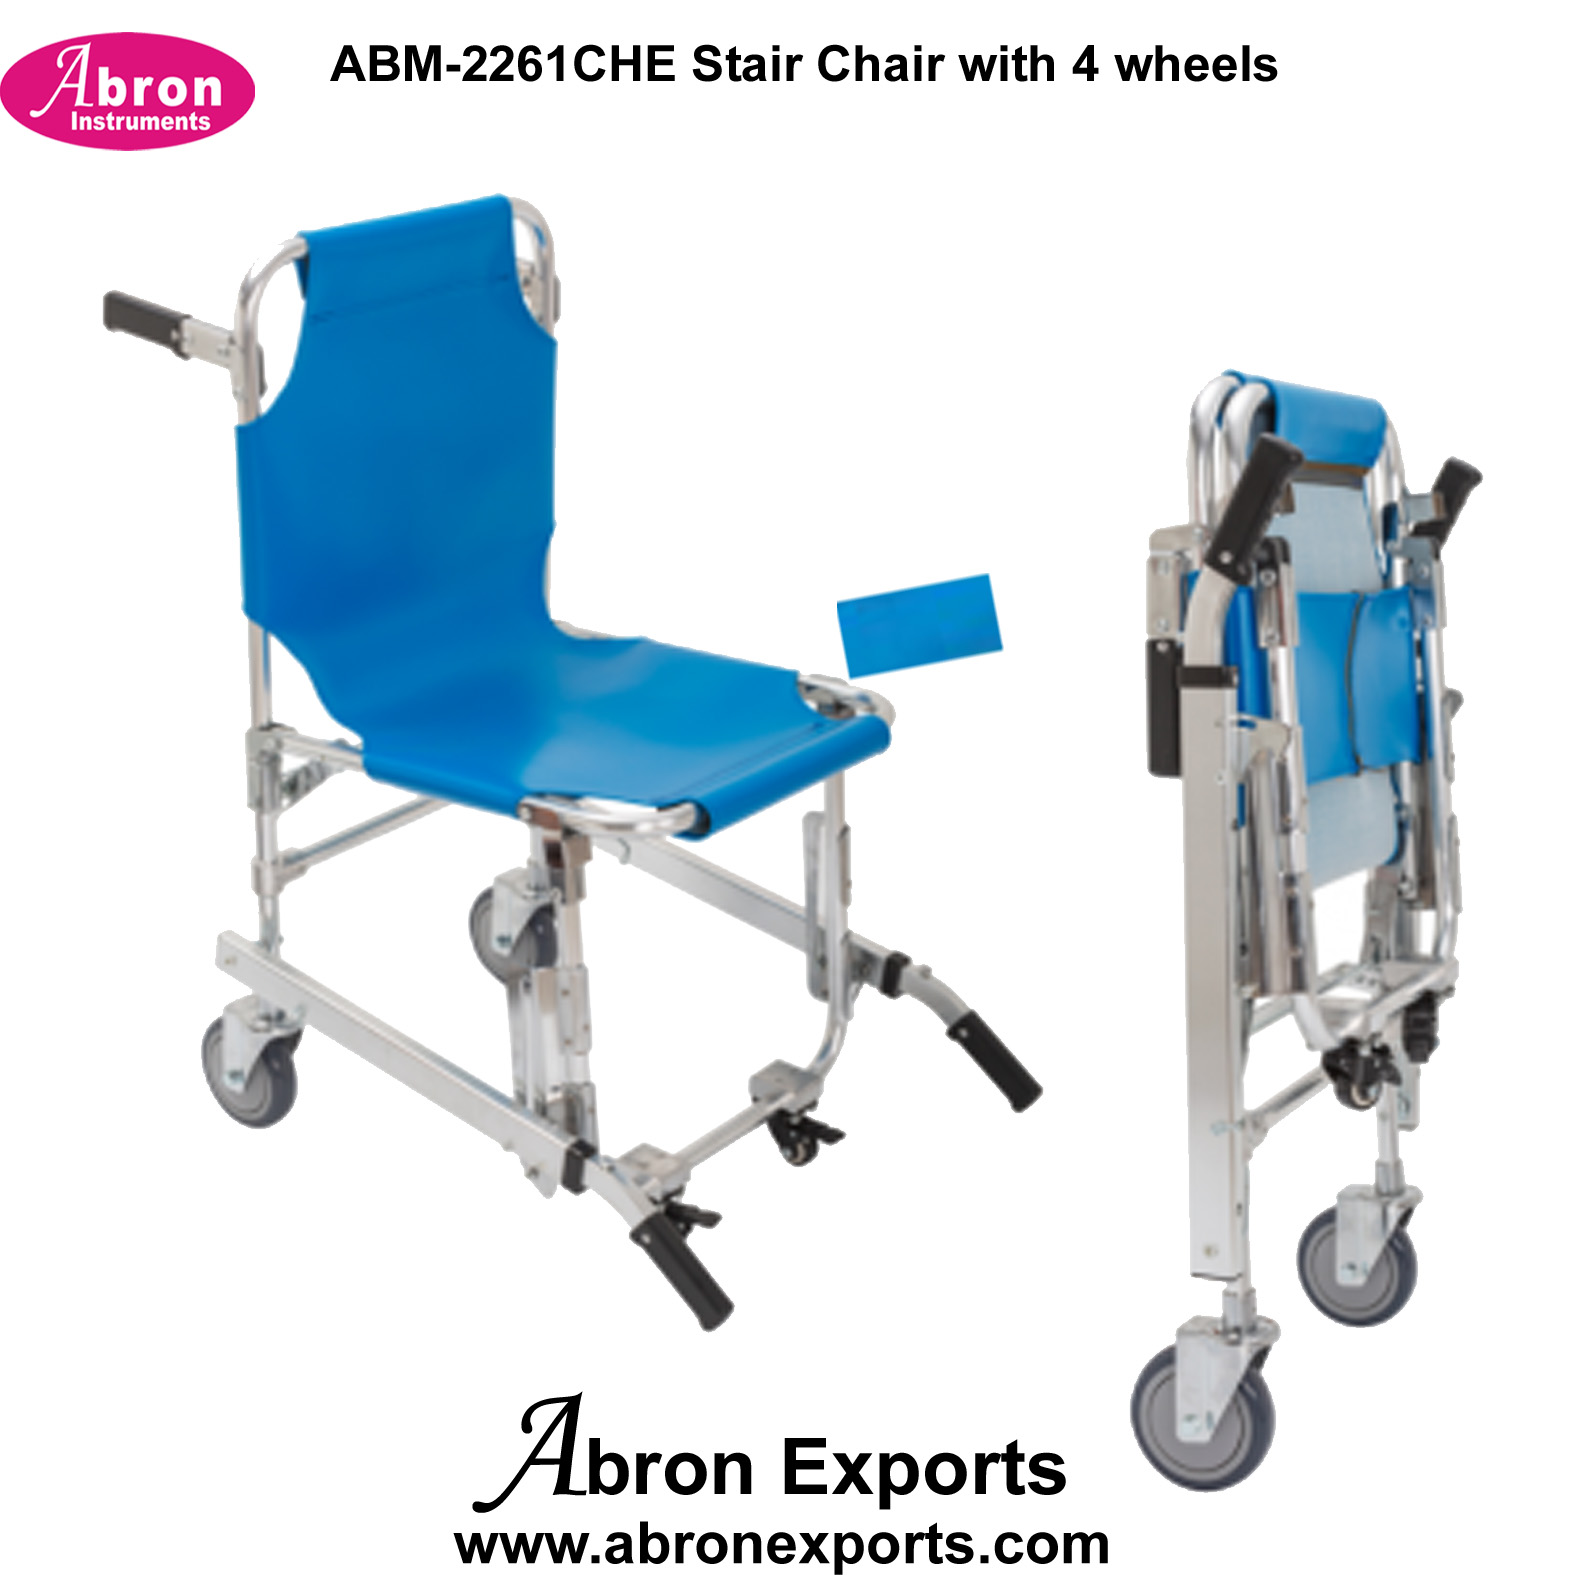 Wheel stair Chair Aluminum with four 4 wheels Abron ABM-2216ST